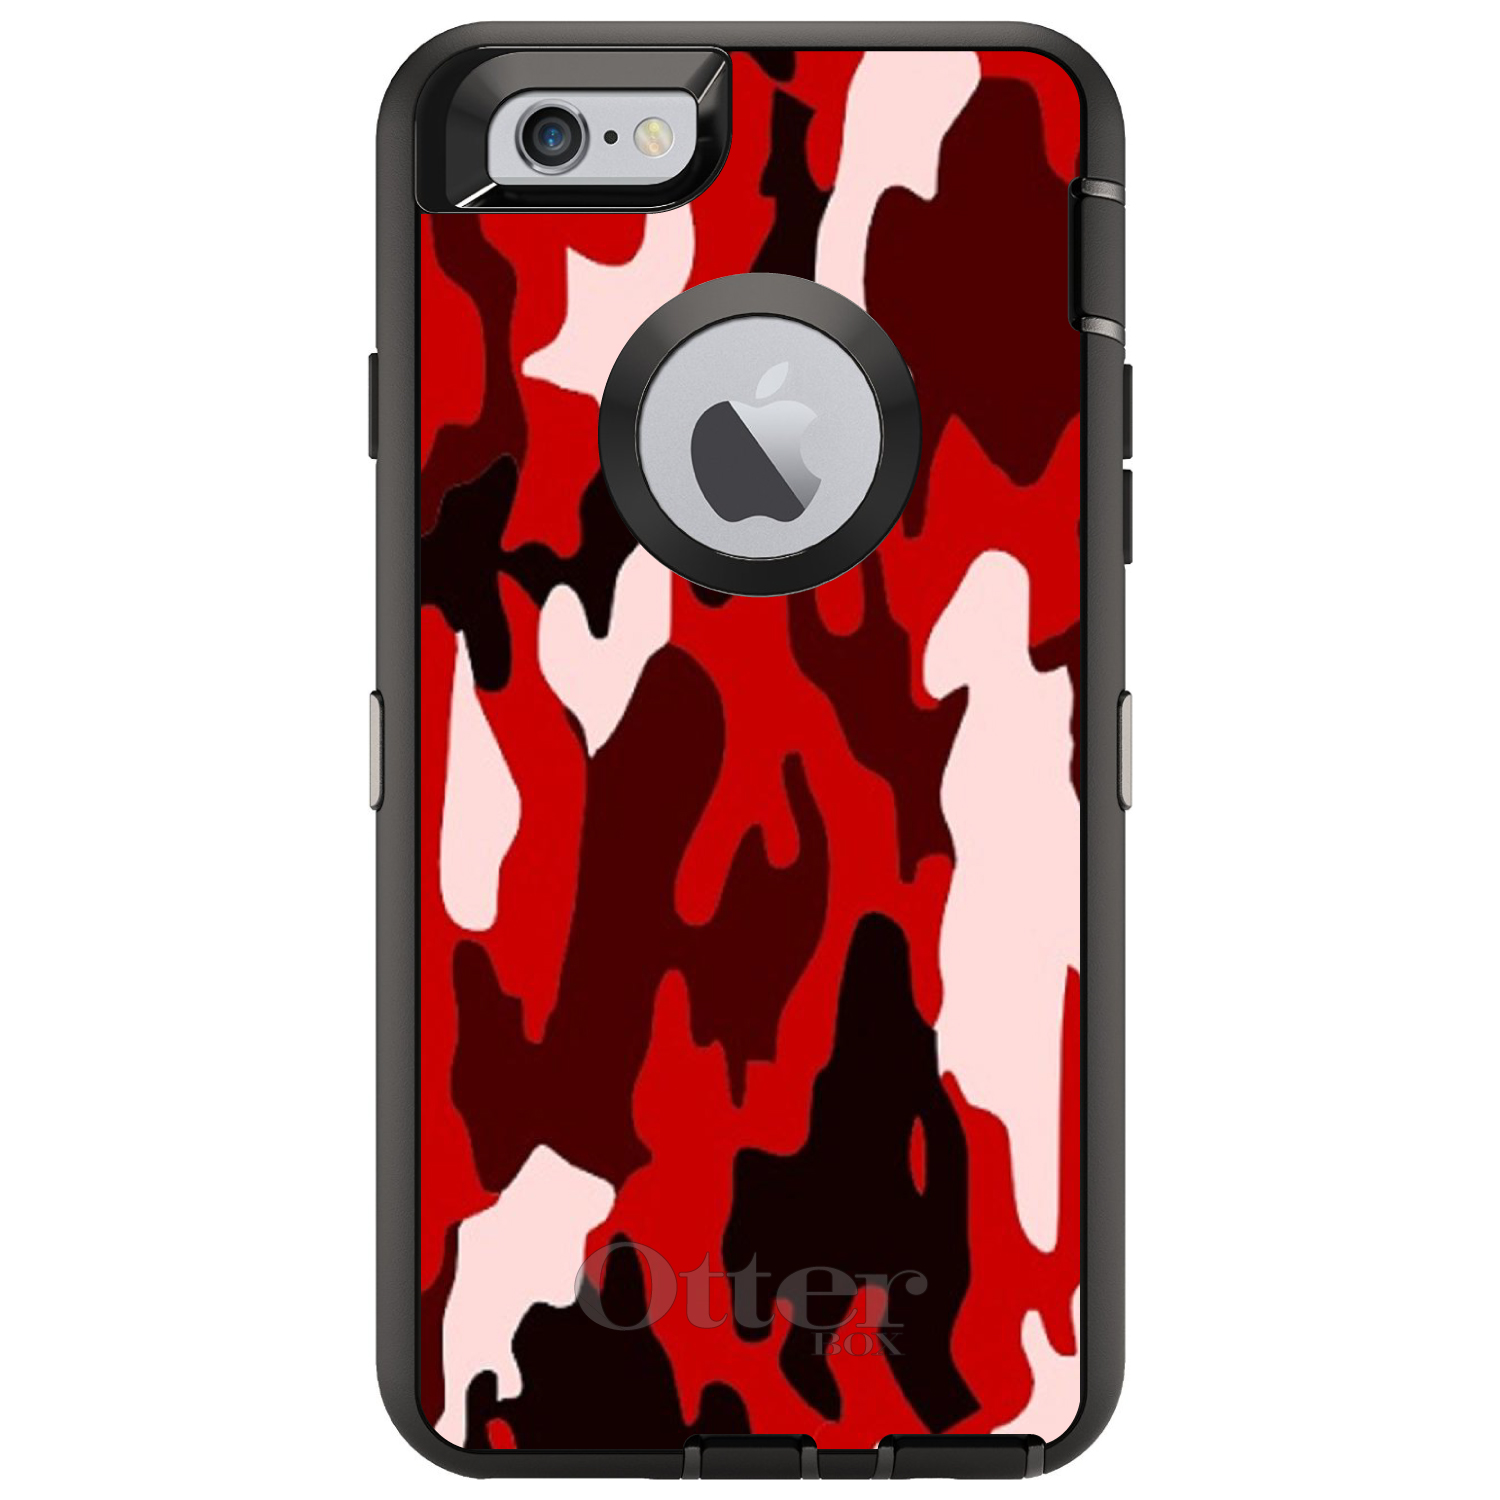 Otterbox Defender - iPhone 14/iPhone 13- Negro, Negro, Accesorios para  Celulares